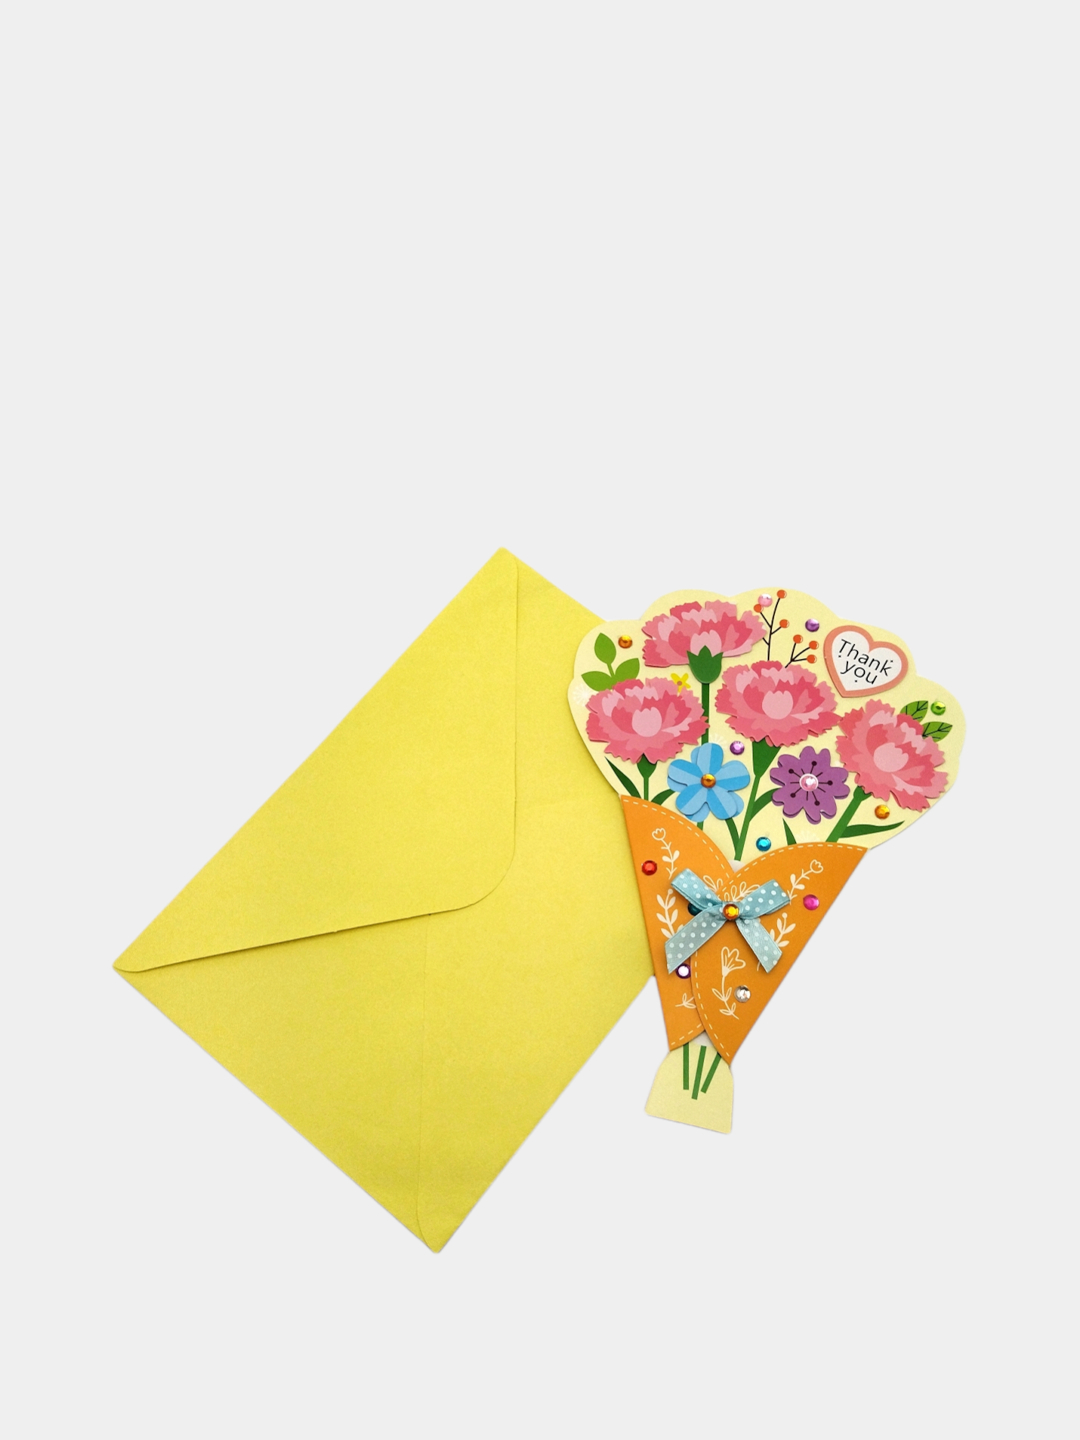 Набор для создания открытки своими руками №1, 3 открытки и конверта, элементы декора